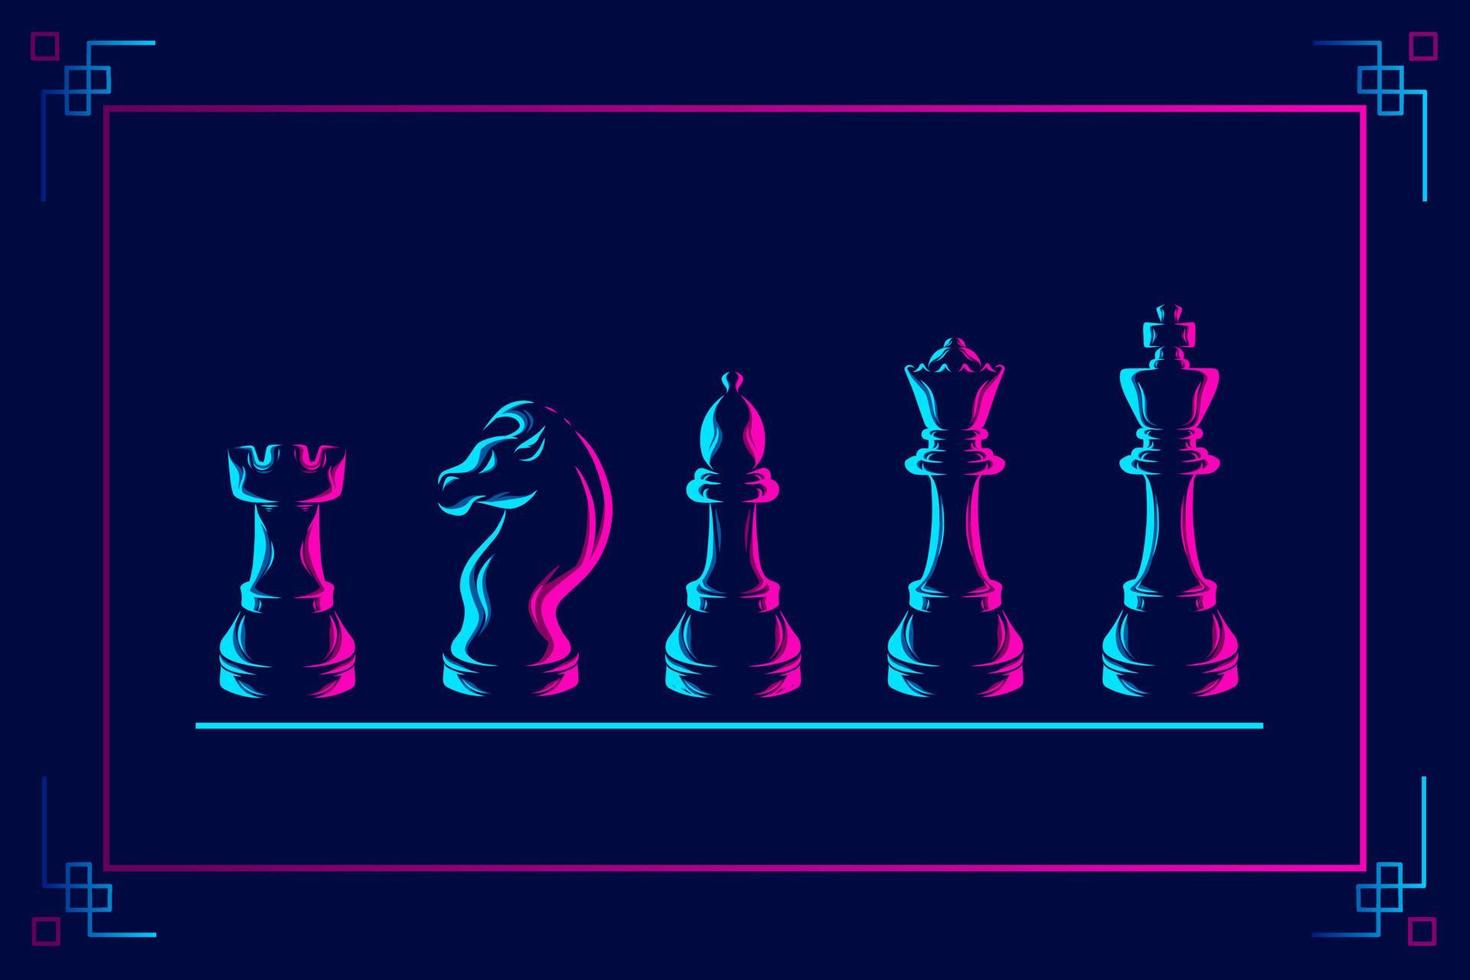 linha de xadrez pop art potrait logotipo design colorido com fundo escuro. ilustração em vetor abstrato. fundo preto isolado para camiseta, pôster, roupas, merchandising, vestuário, design de crachá